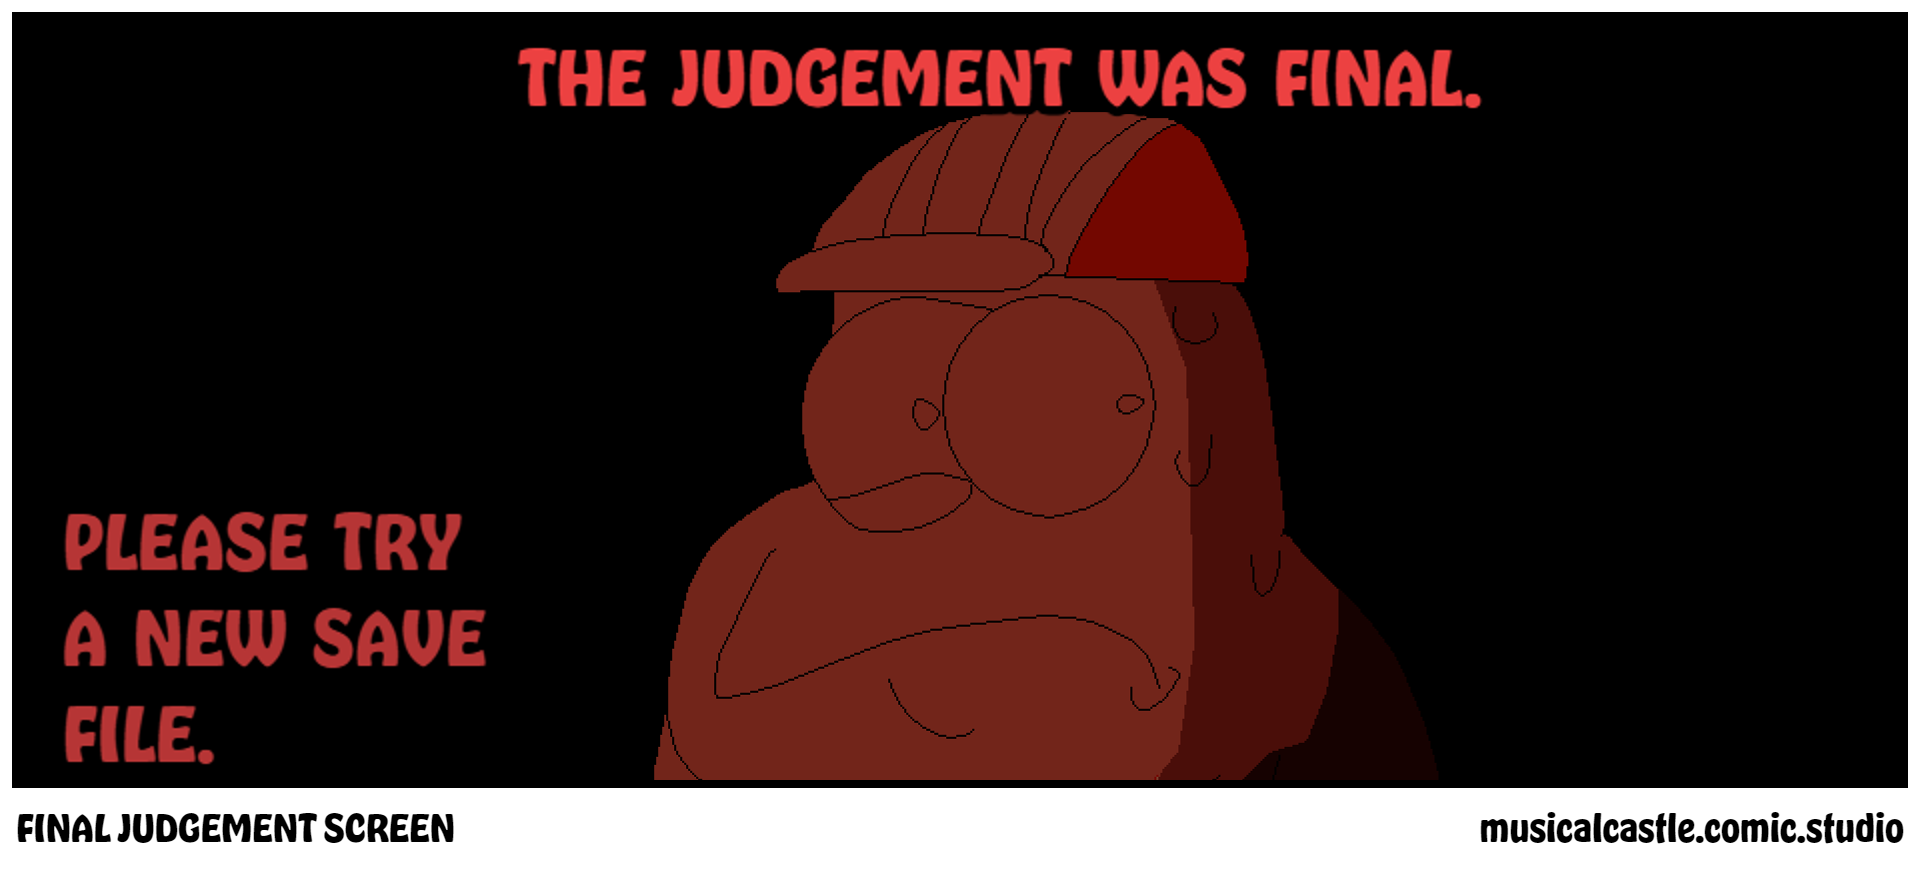 FINAL JUDGEMENT SCREEN